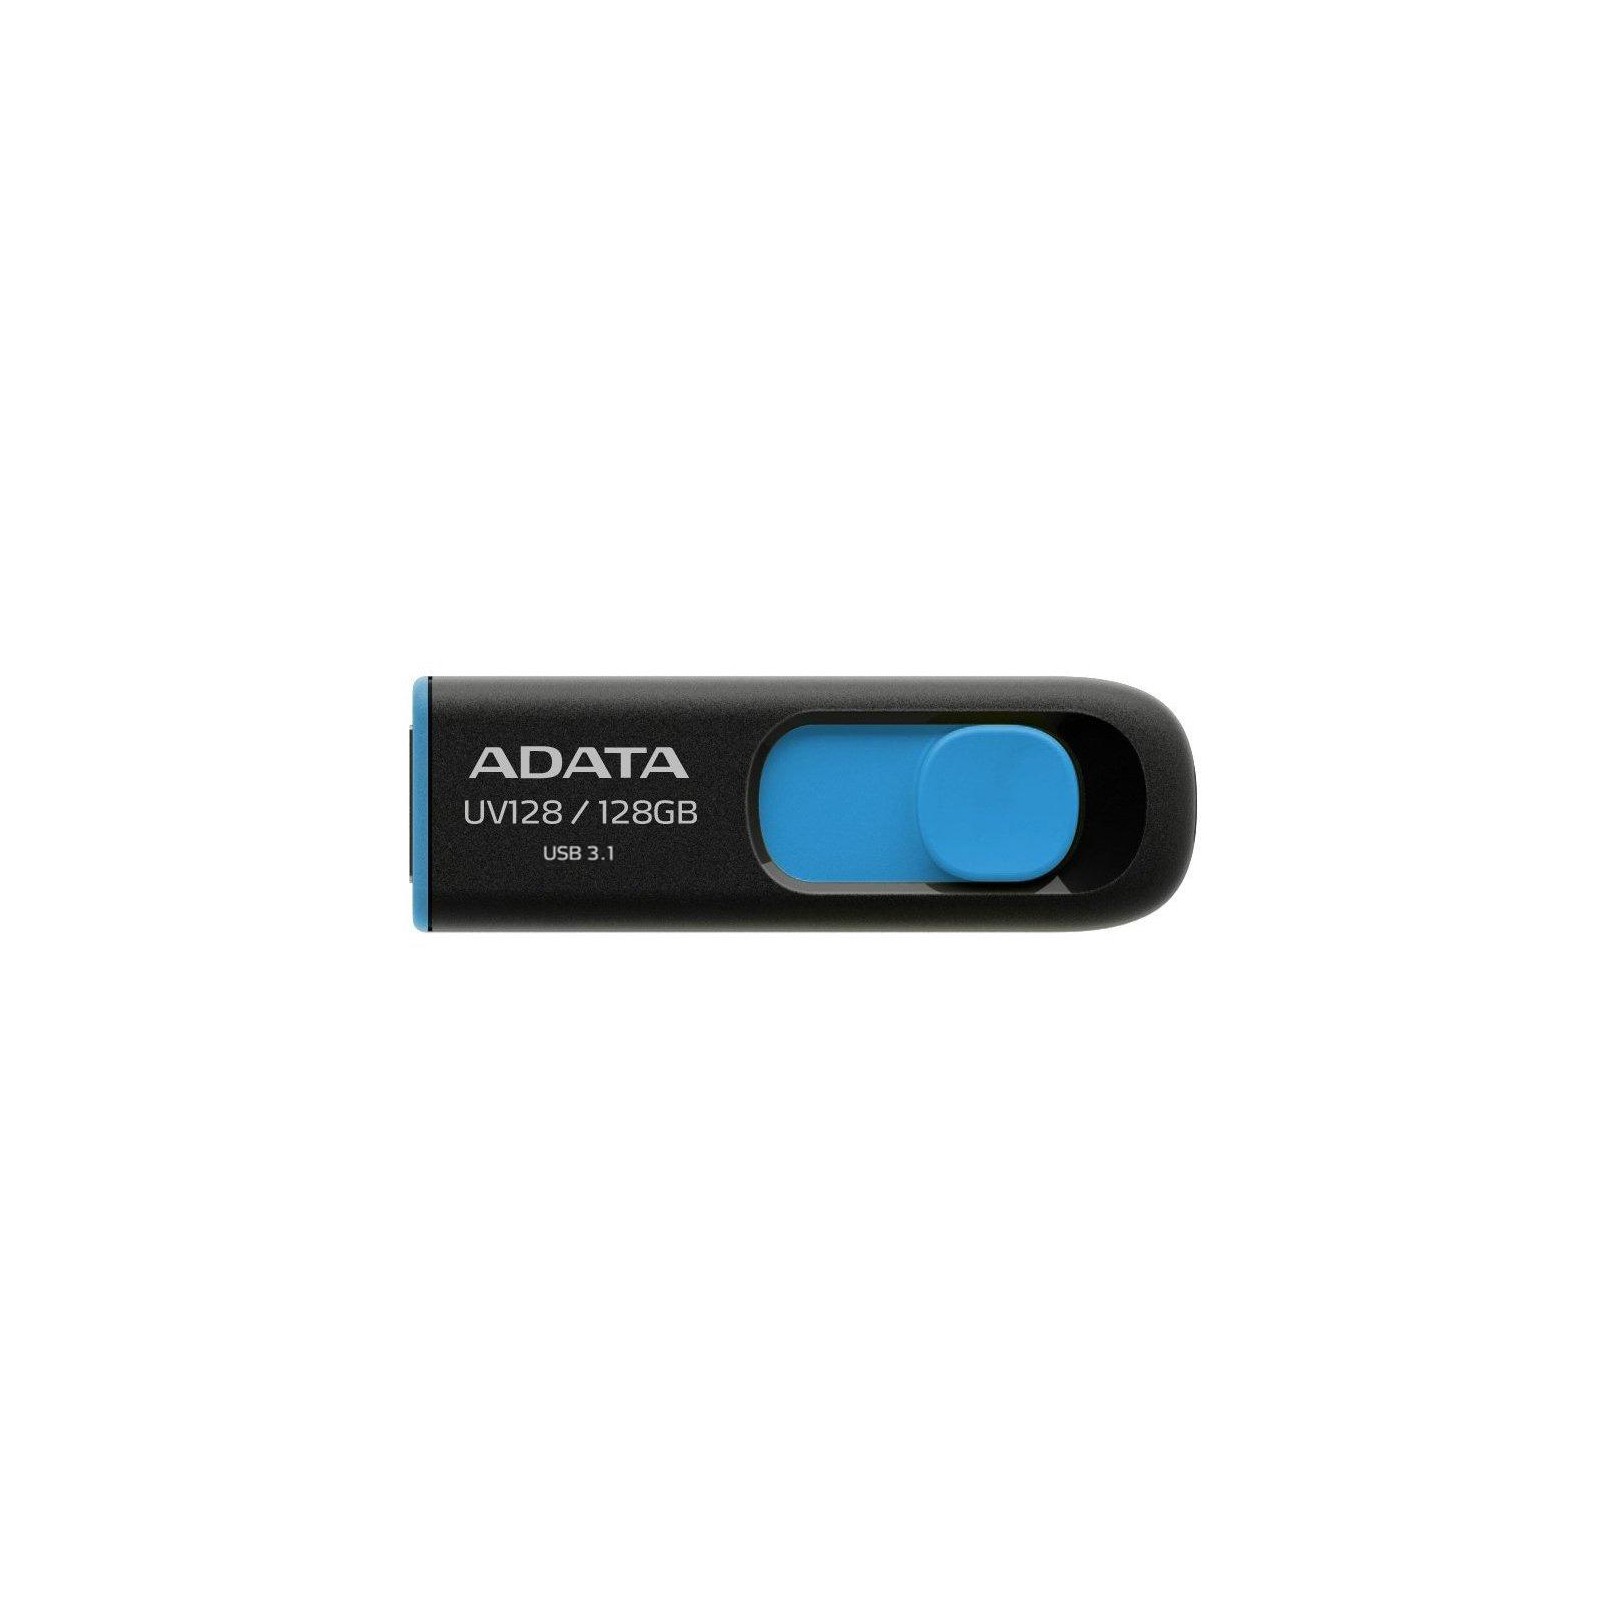 USB флеш накопичувач ADATA 32GB UV128 Black-Yellow USB 3.0 (AUV128-32G-RBY)